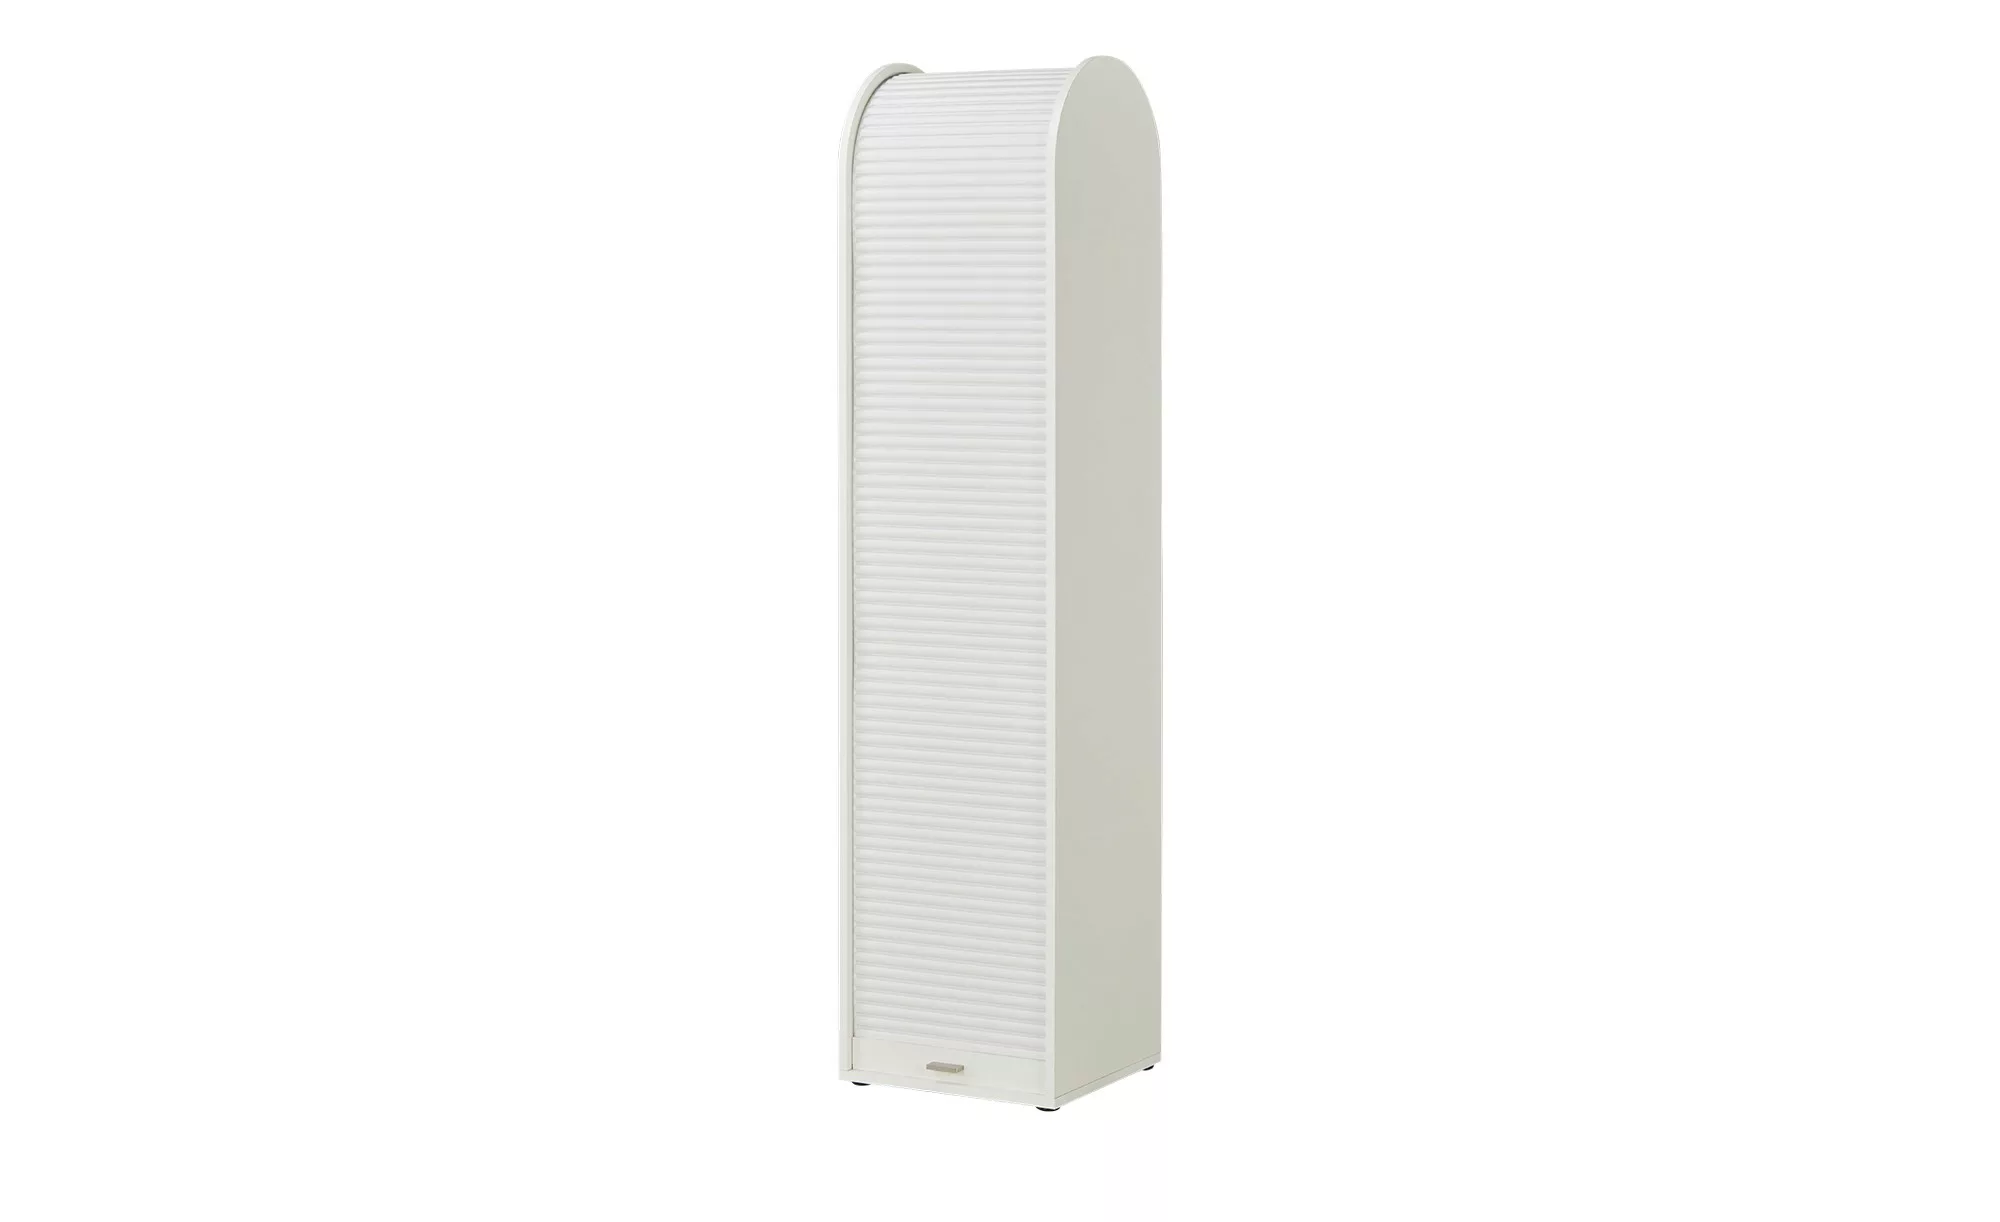 Jalousieschrank  Euphrat - weiß - 46 cm - 192 cm - 44 cm - Sconto günstig online kaufen